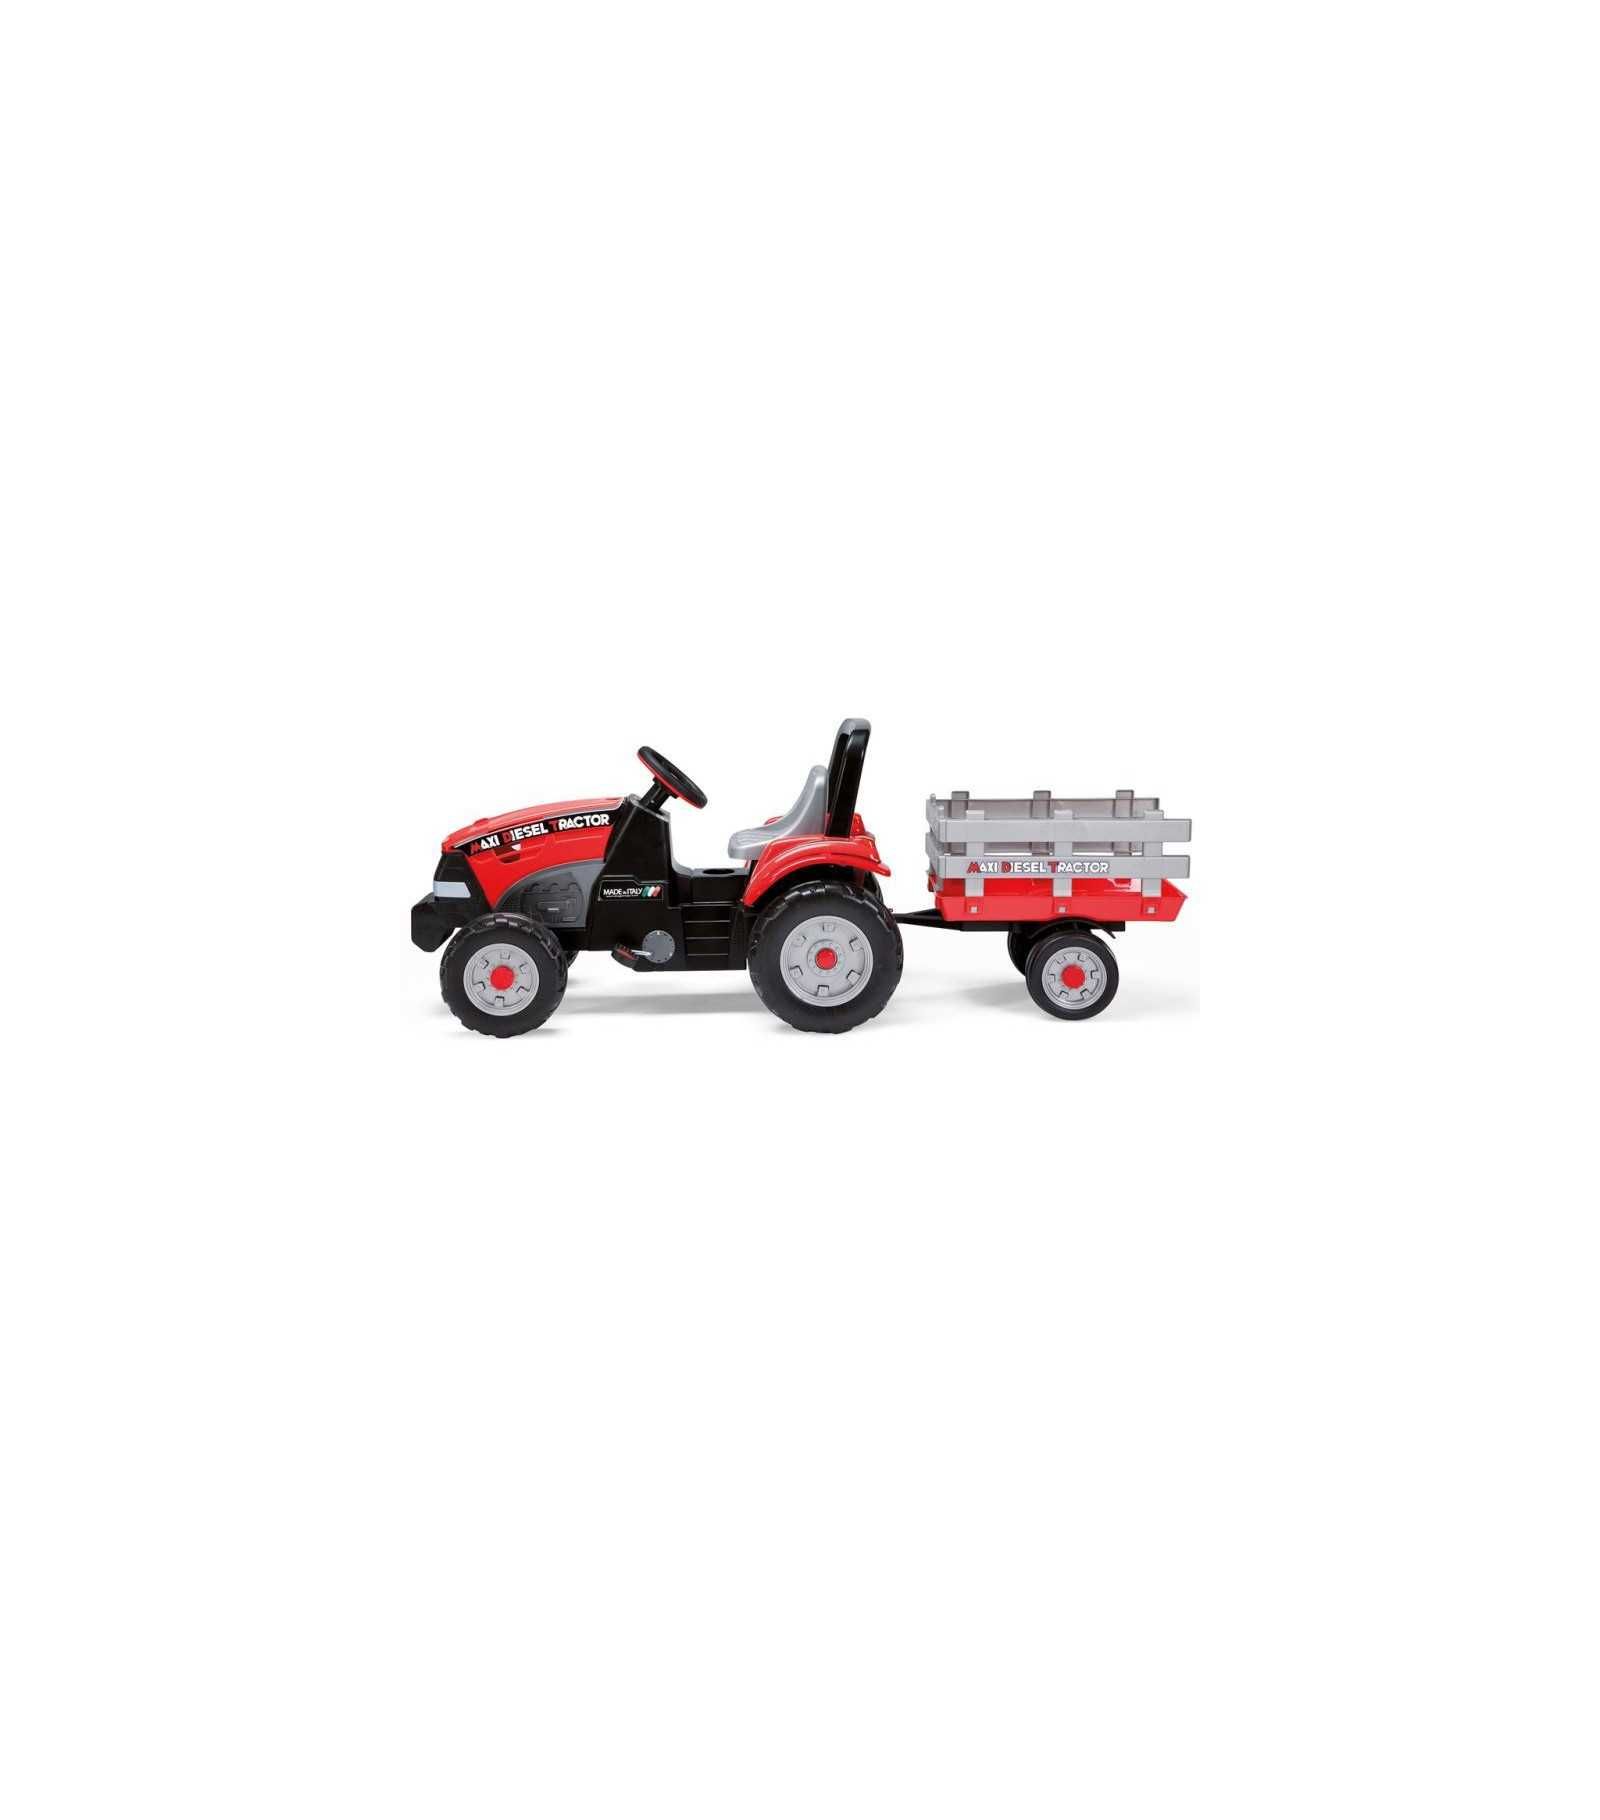 Peg Perego MAXI Diesel WIELKI traktor na pedały z przyczepą 172CM NOWY